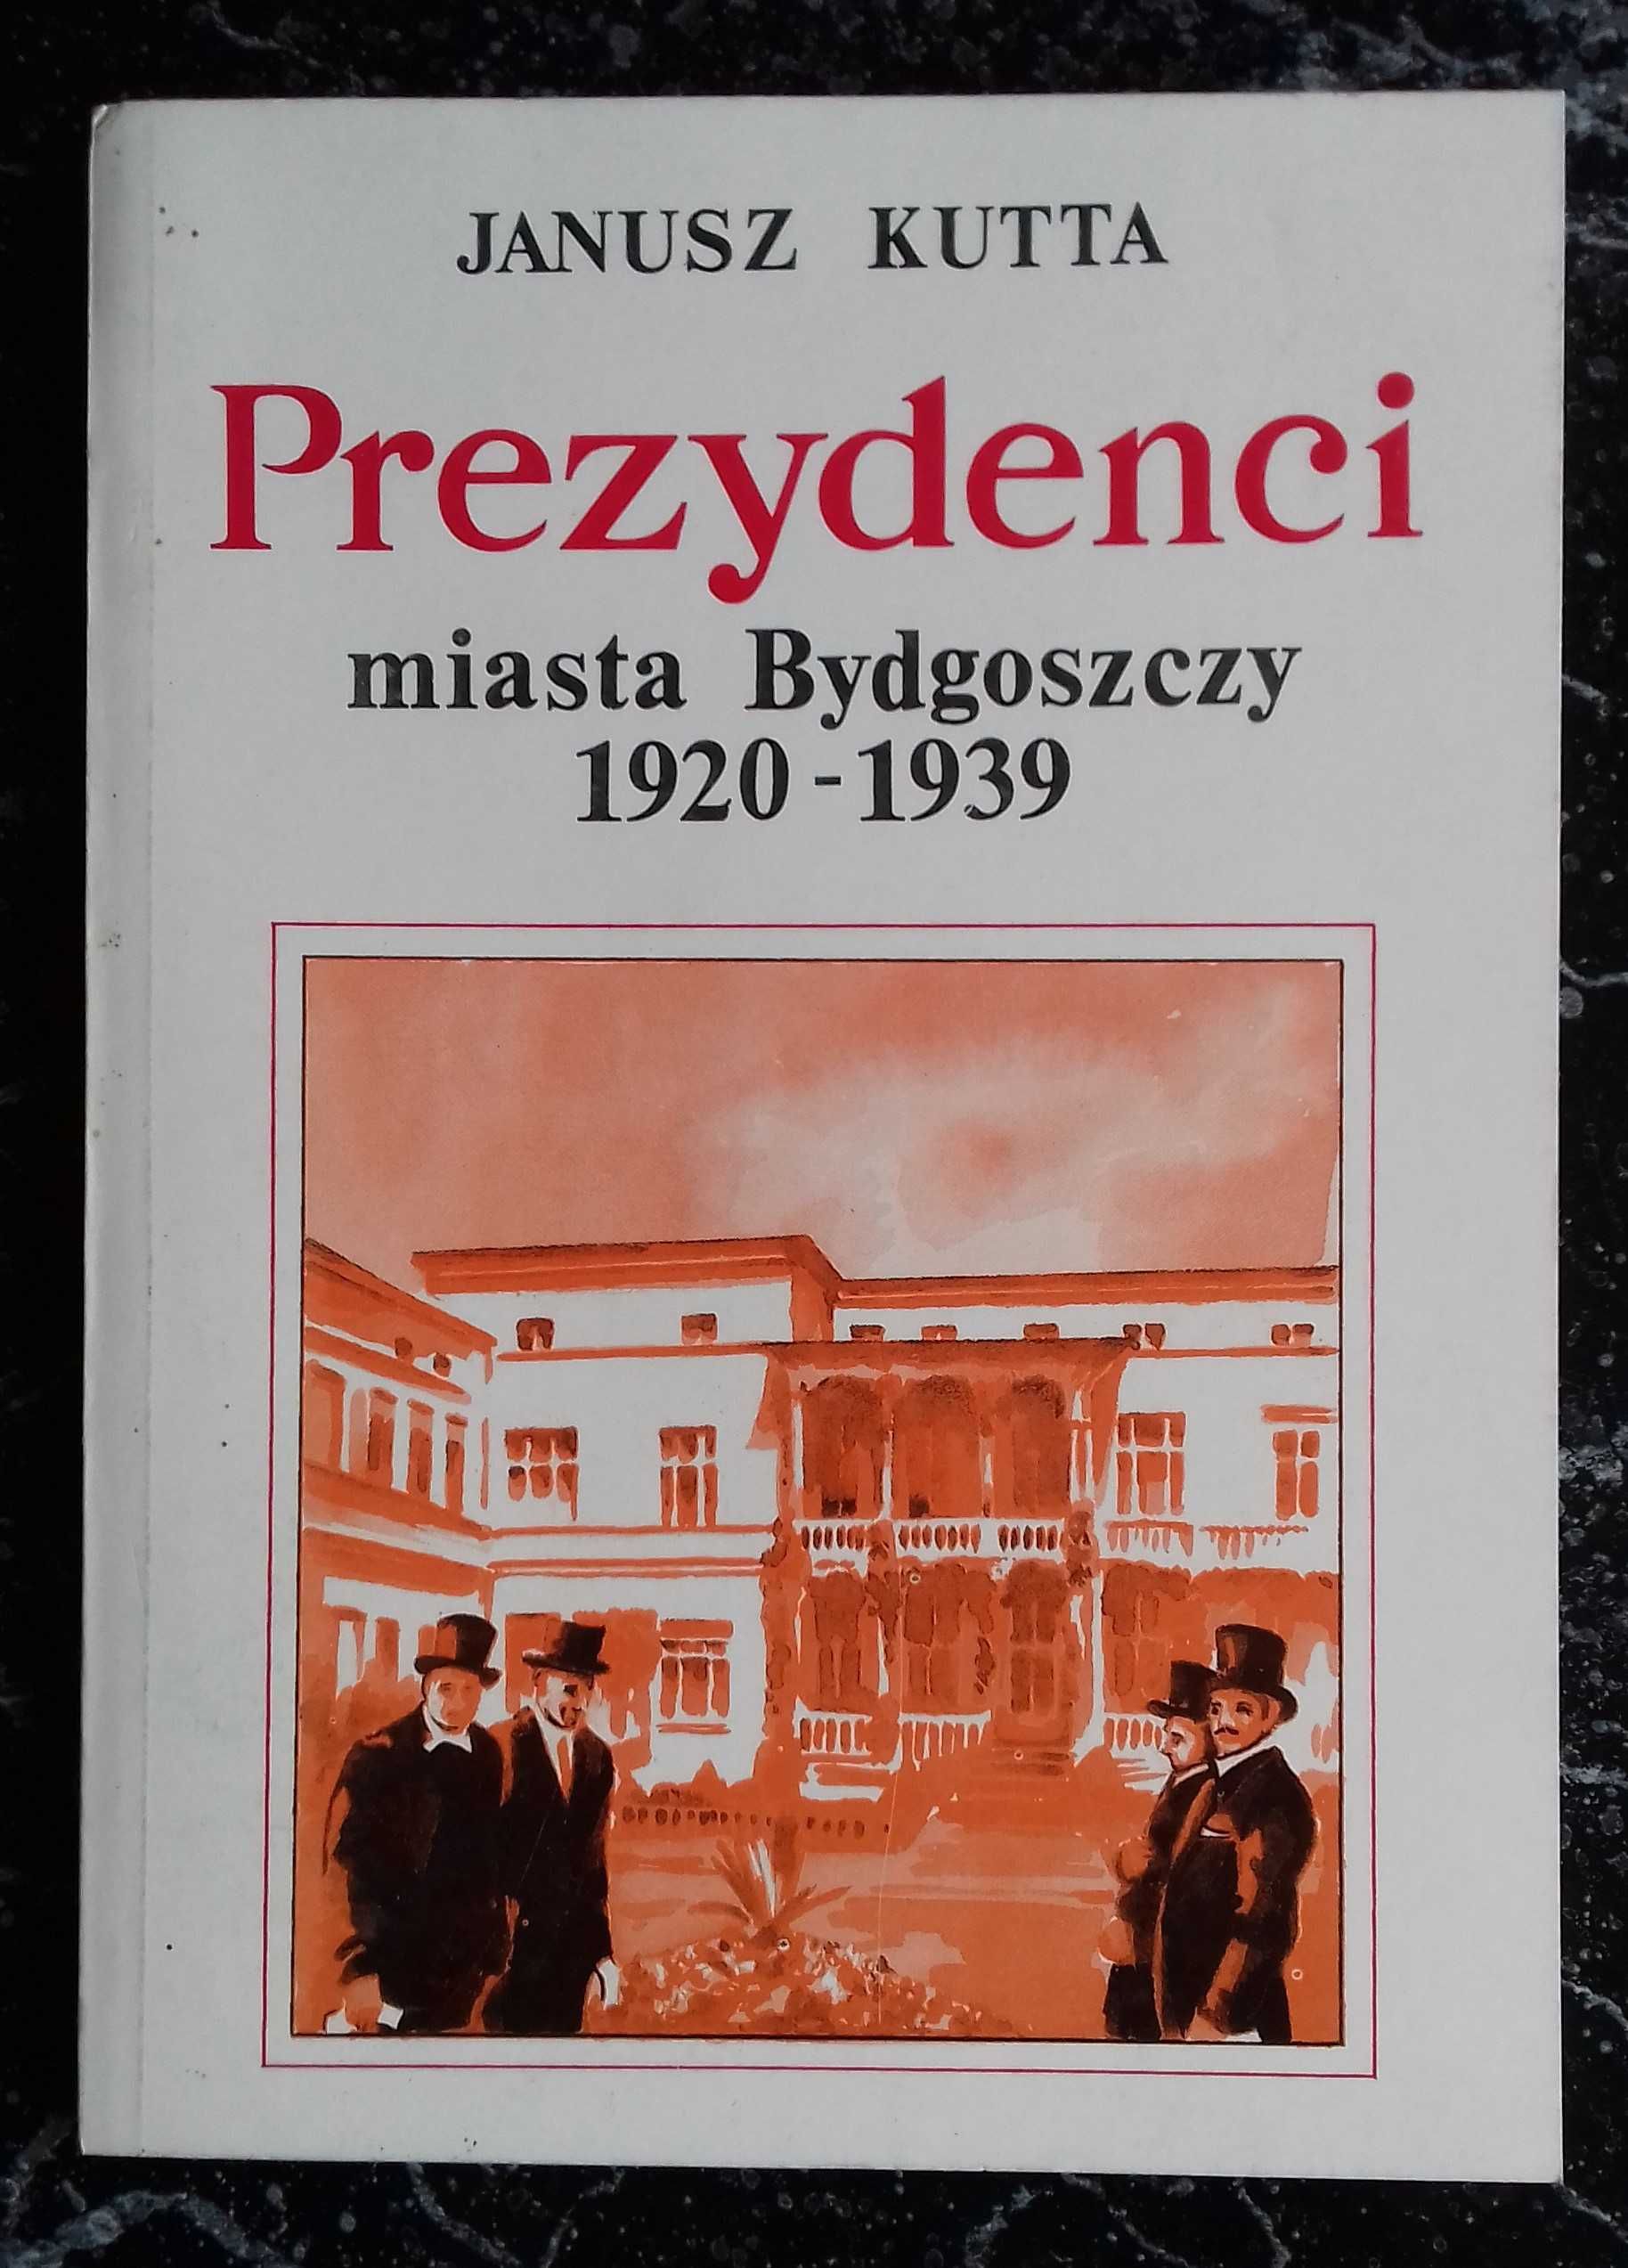 Prezydenci miasta Bydgoszczy - J. Kutta